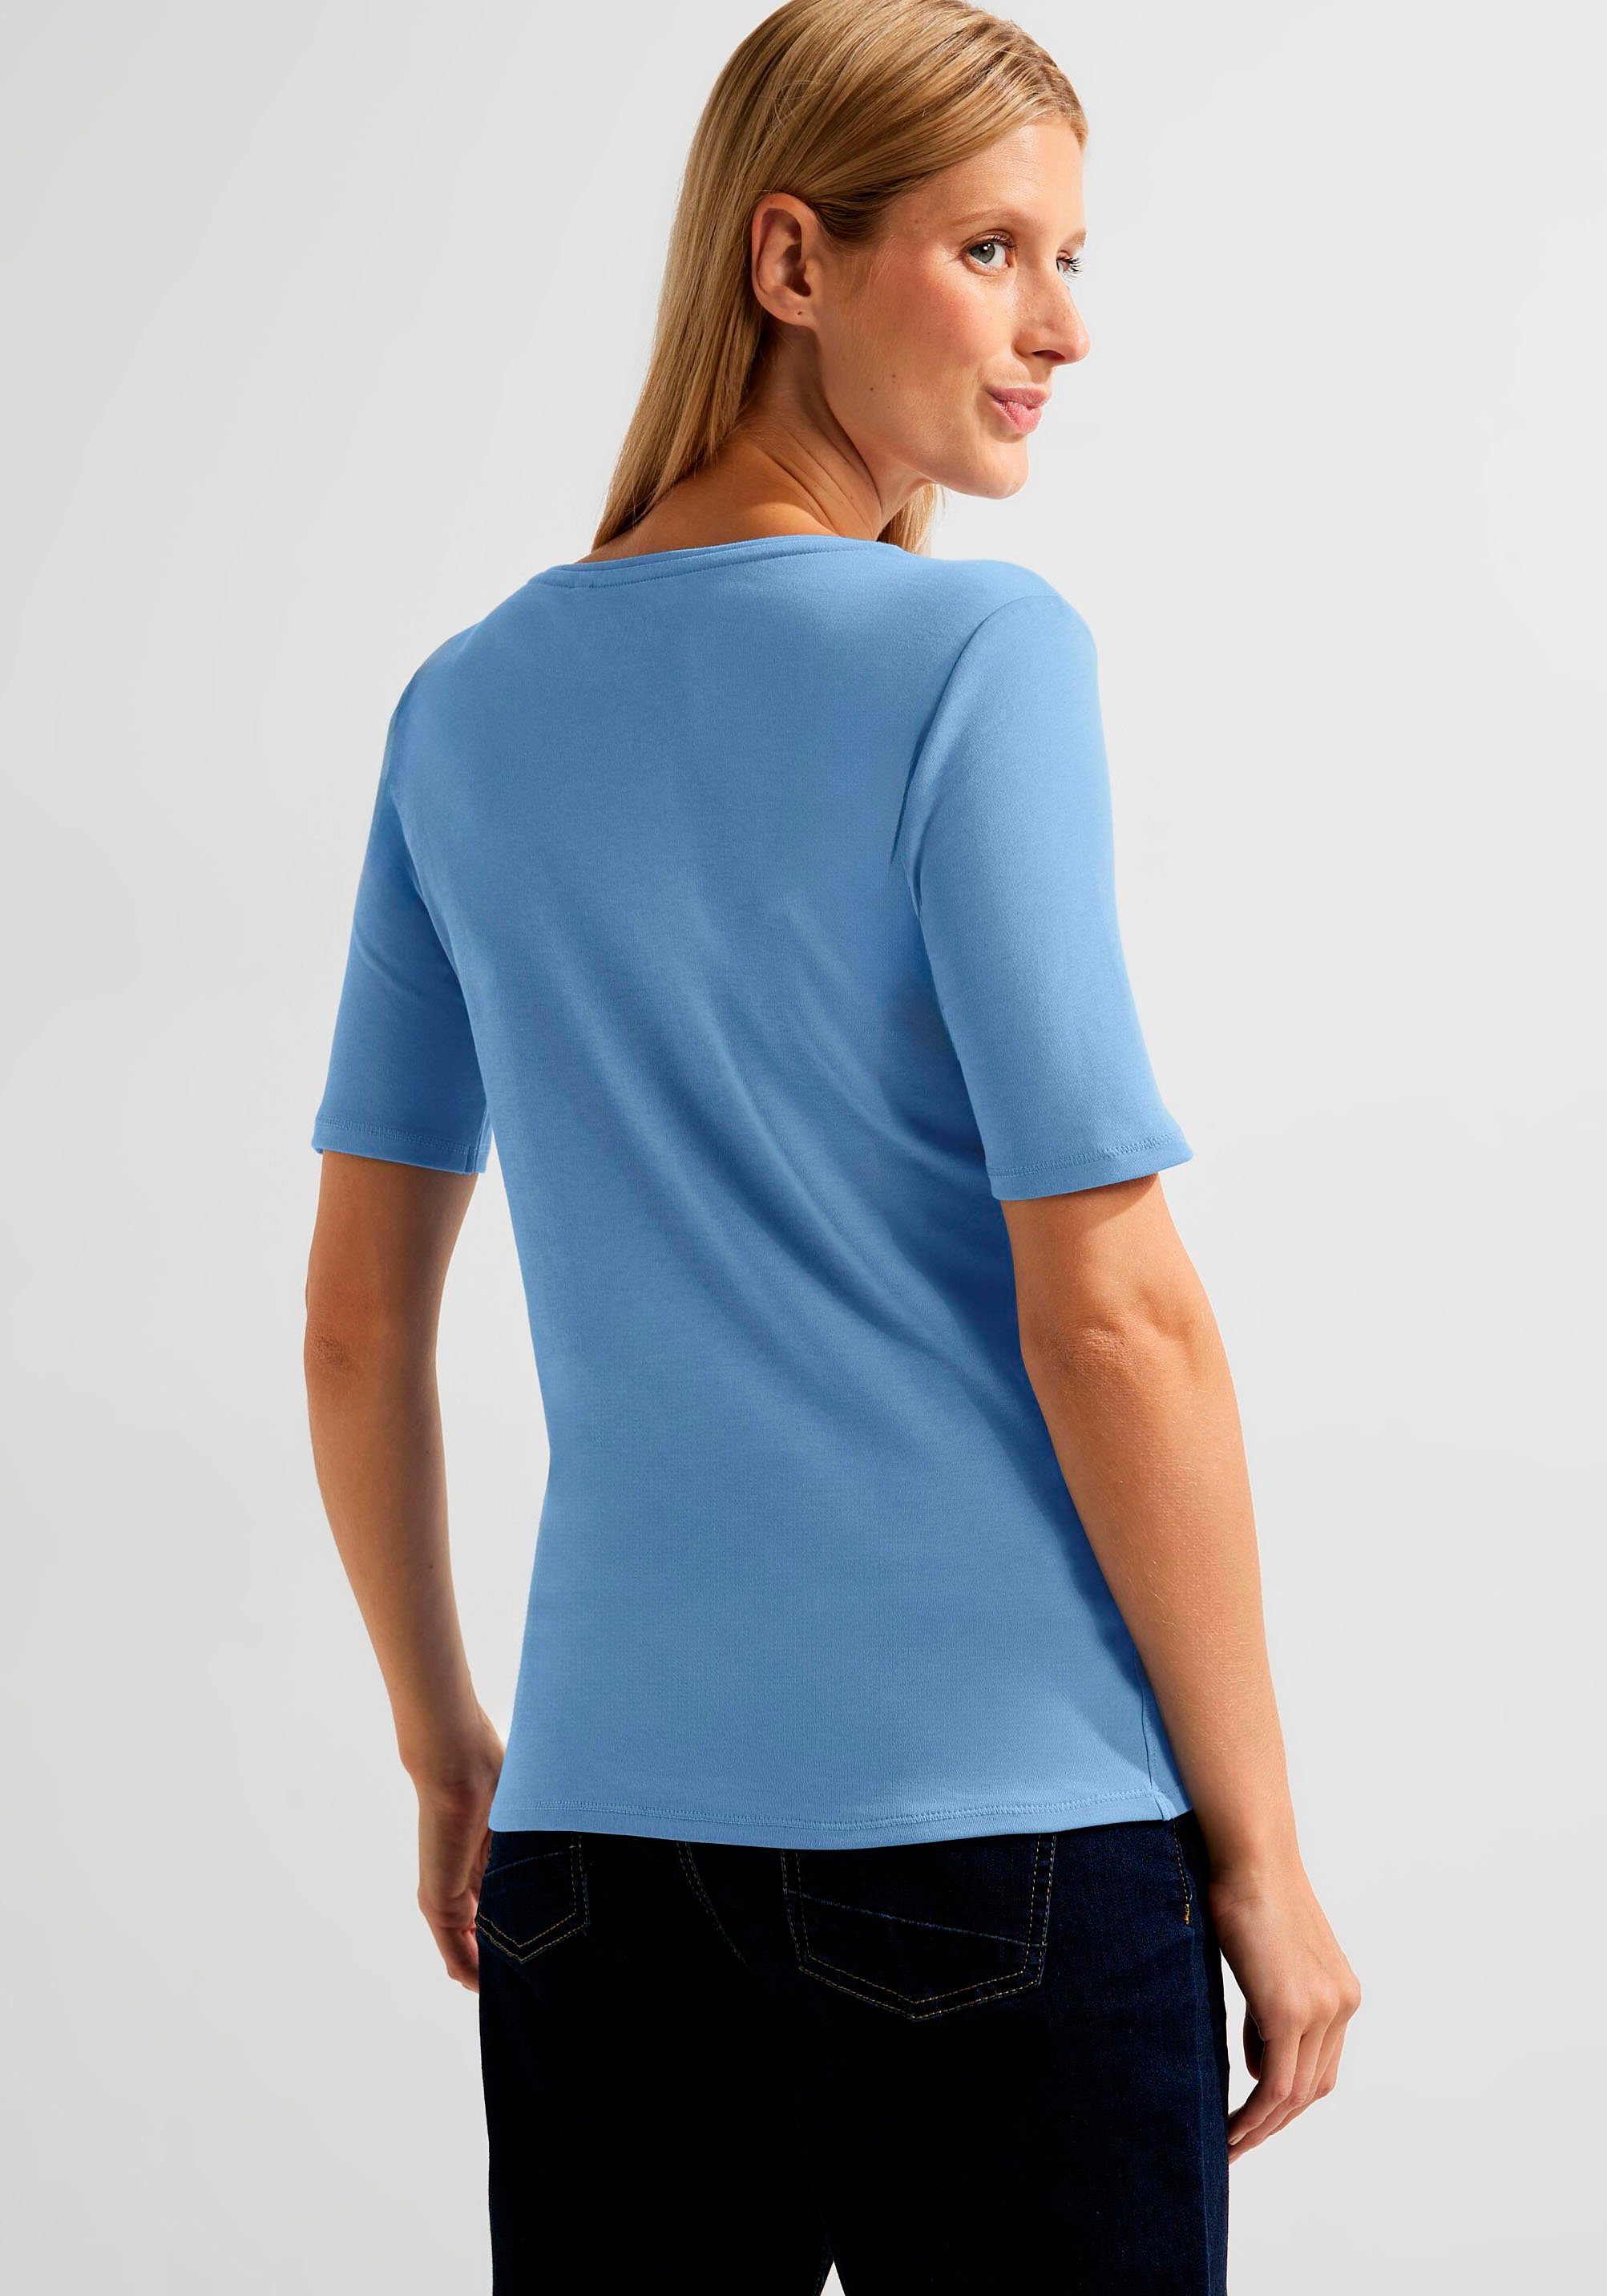 real T-Shirt Rundhalsausschnitt Lena NOS klassischem Cecil blue Style mit